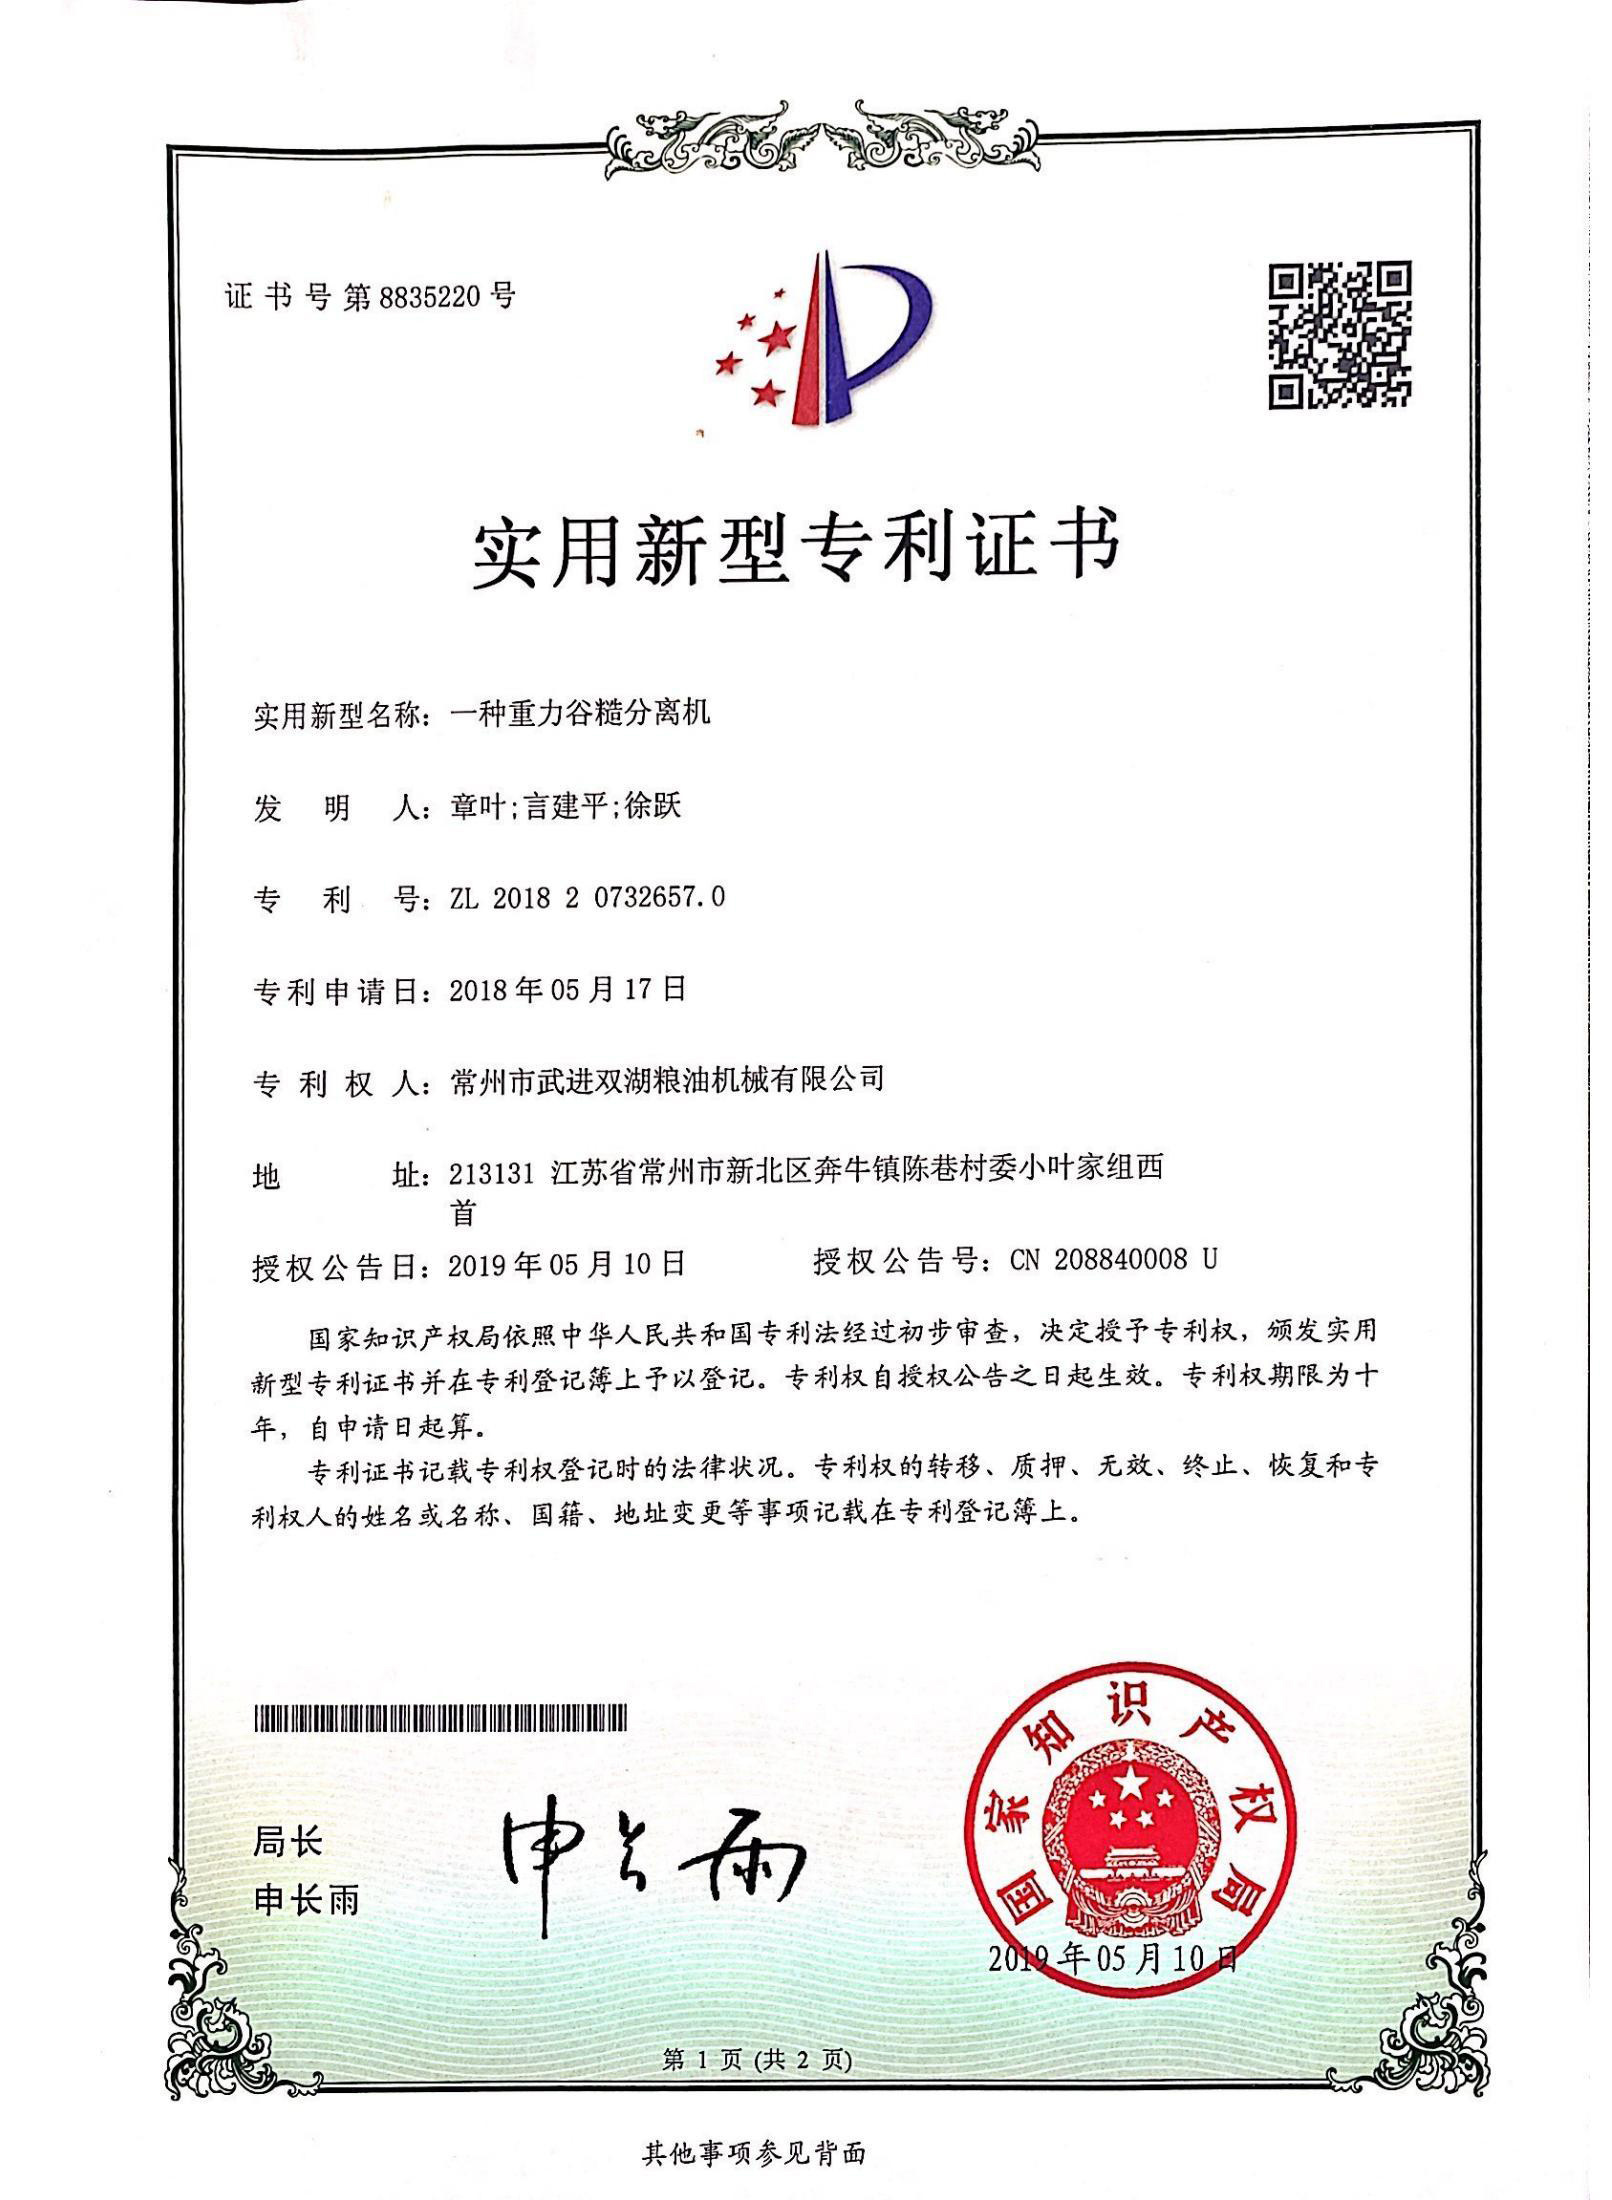 Patent Certificate of Gravity Grain Rough Separator